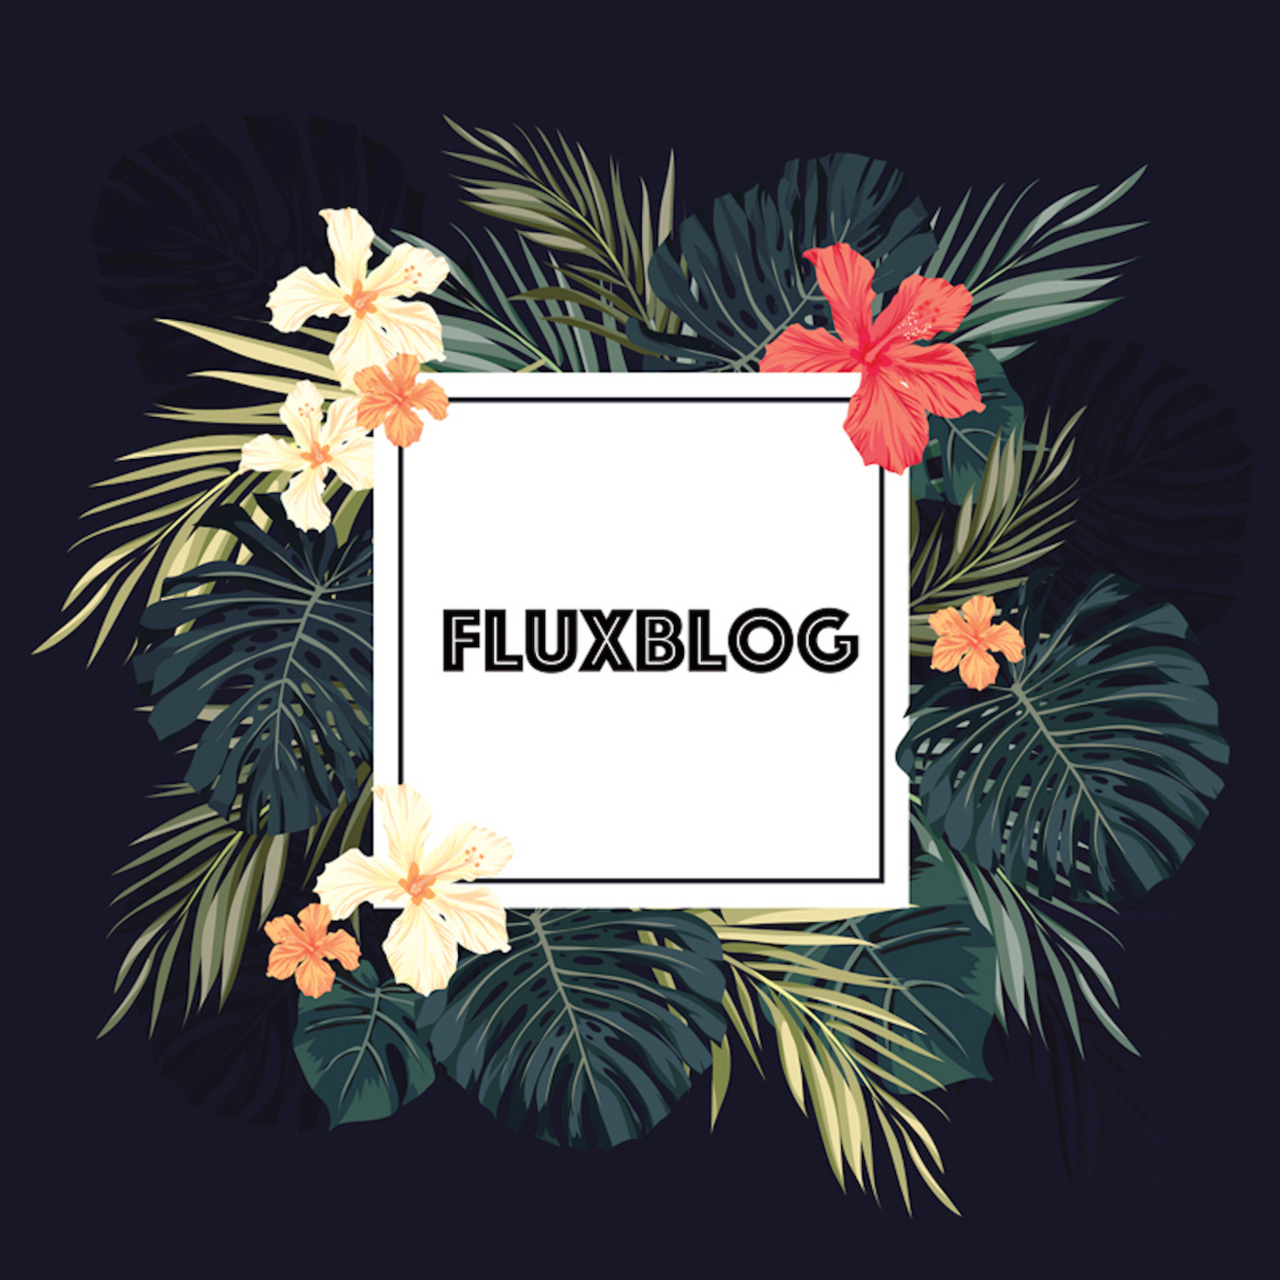 Artwork for Fluxblog